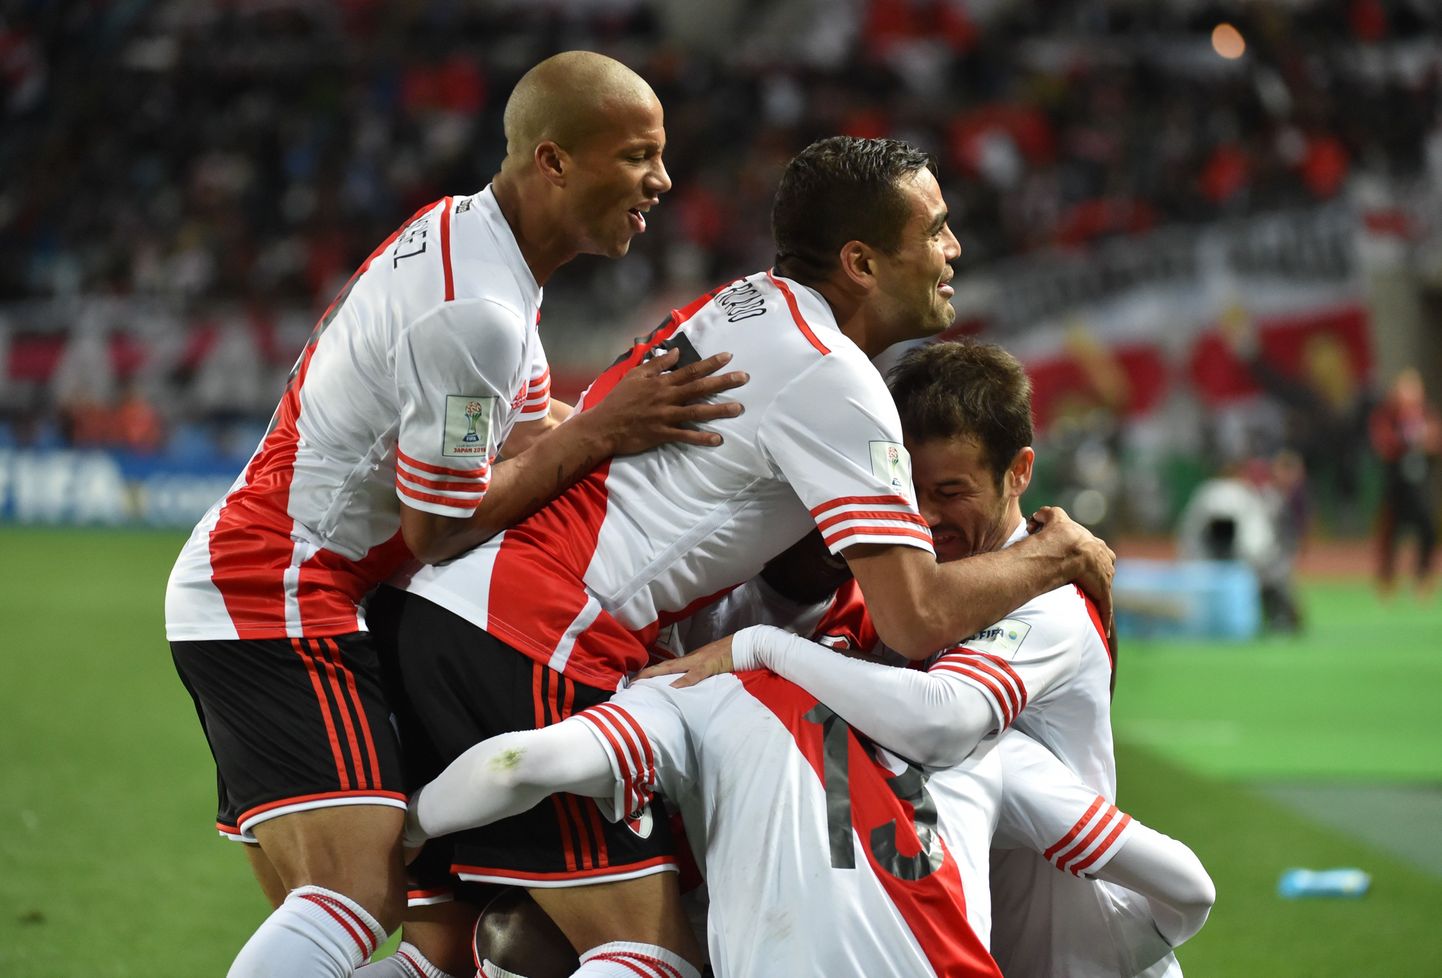 River Plate'i mängijad tähistavad võiduväravat.